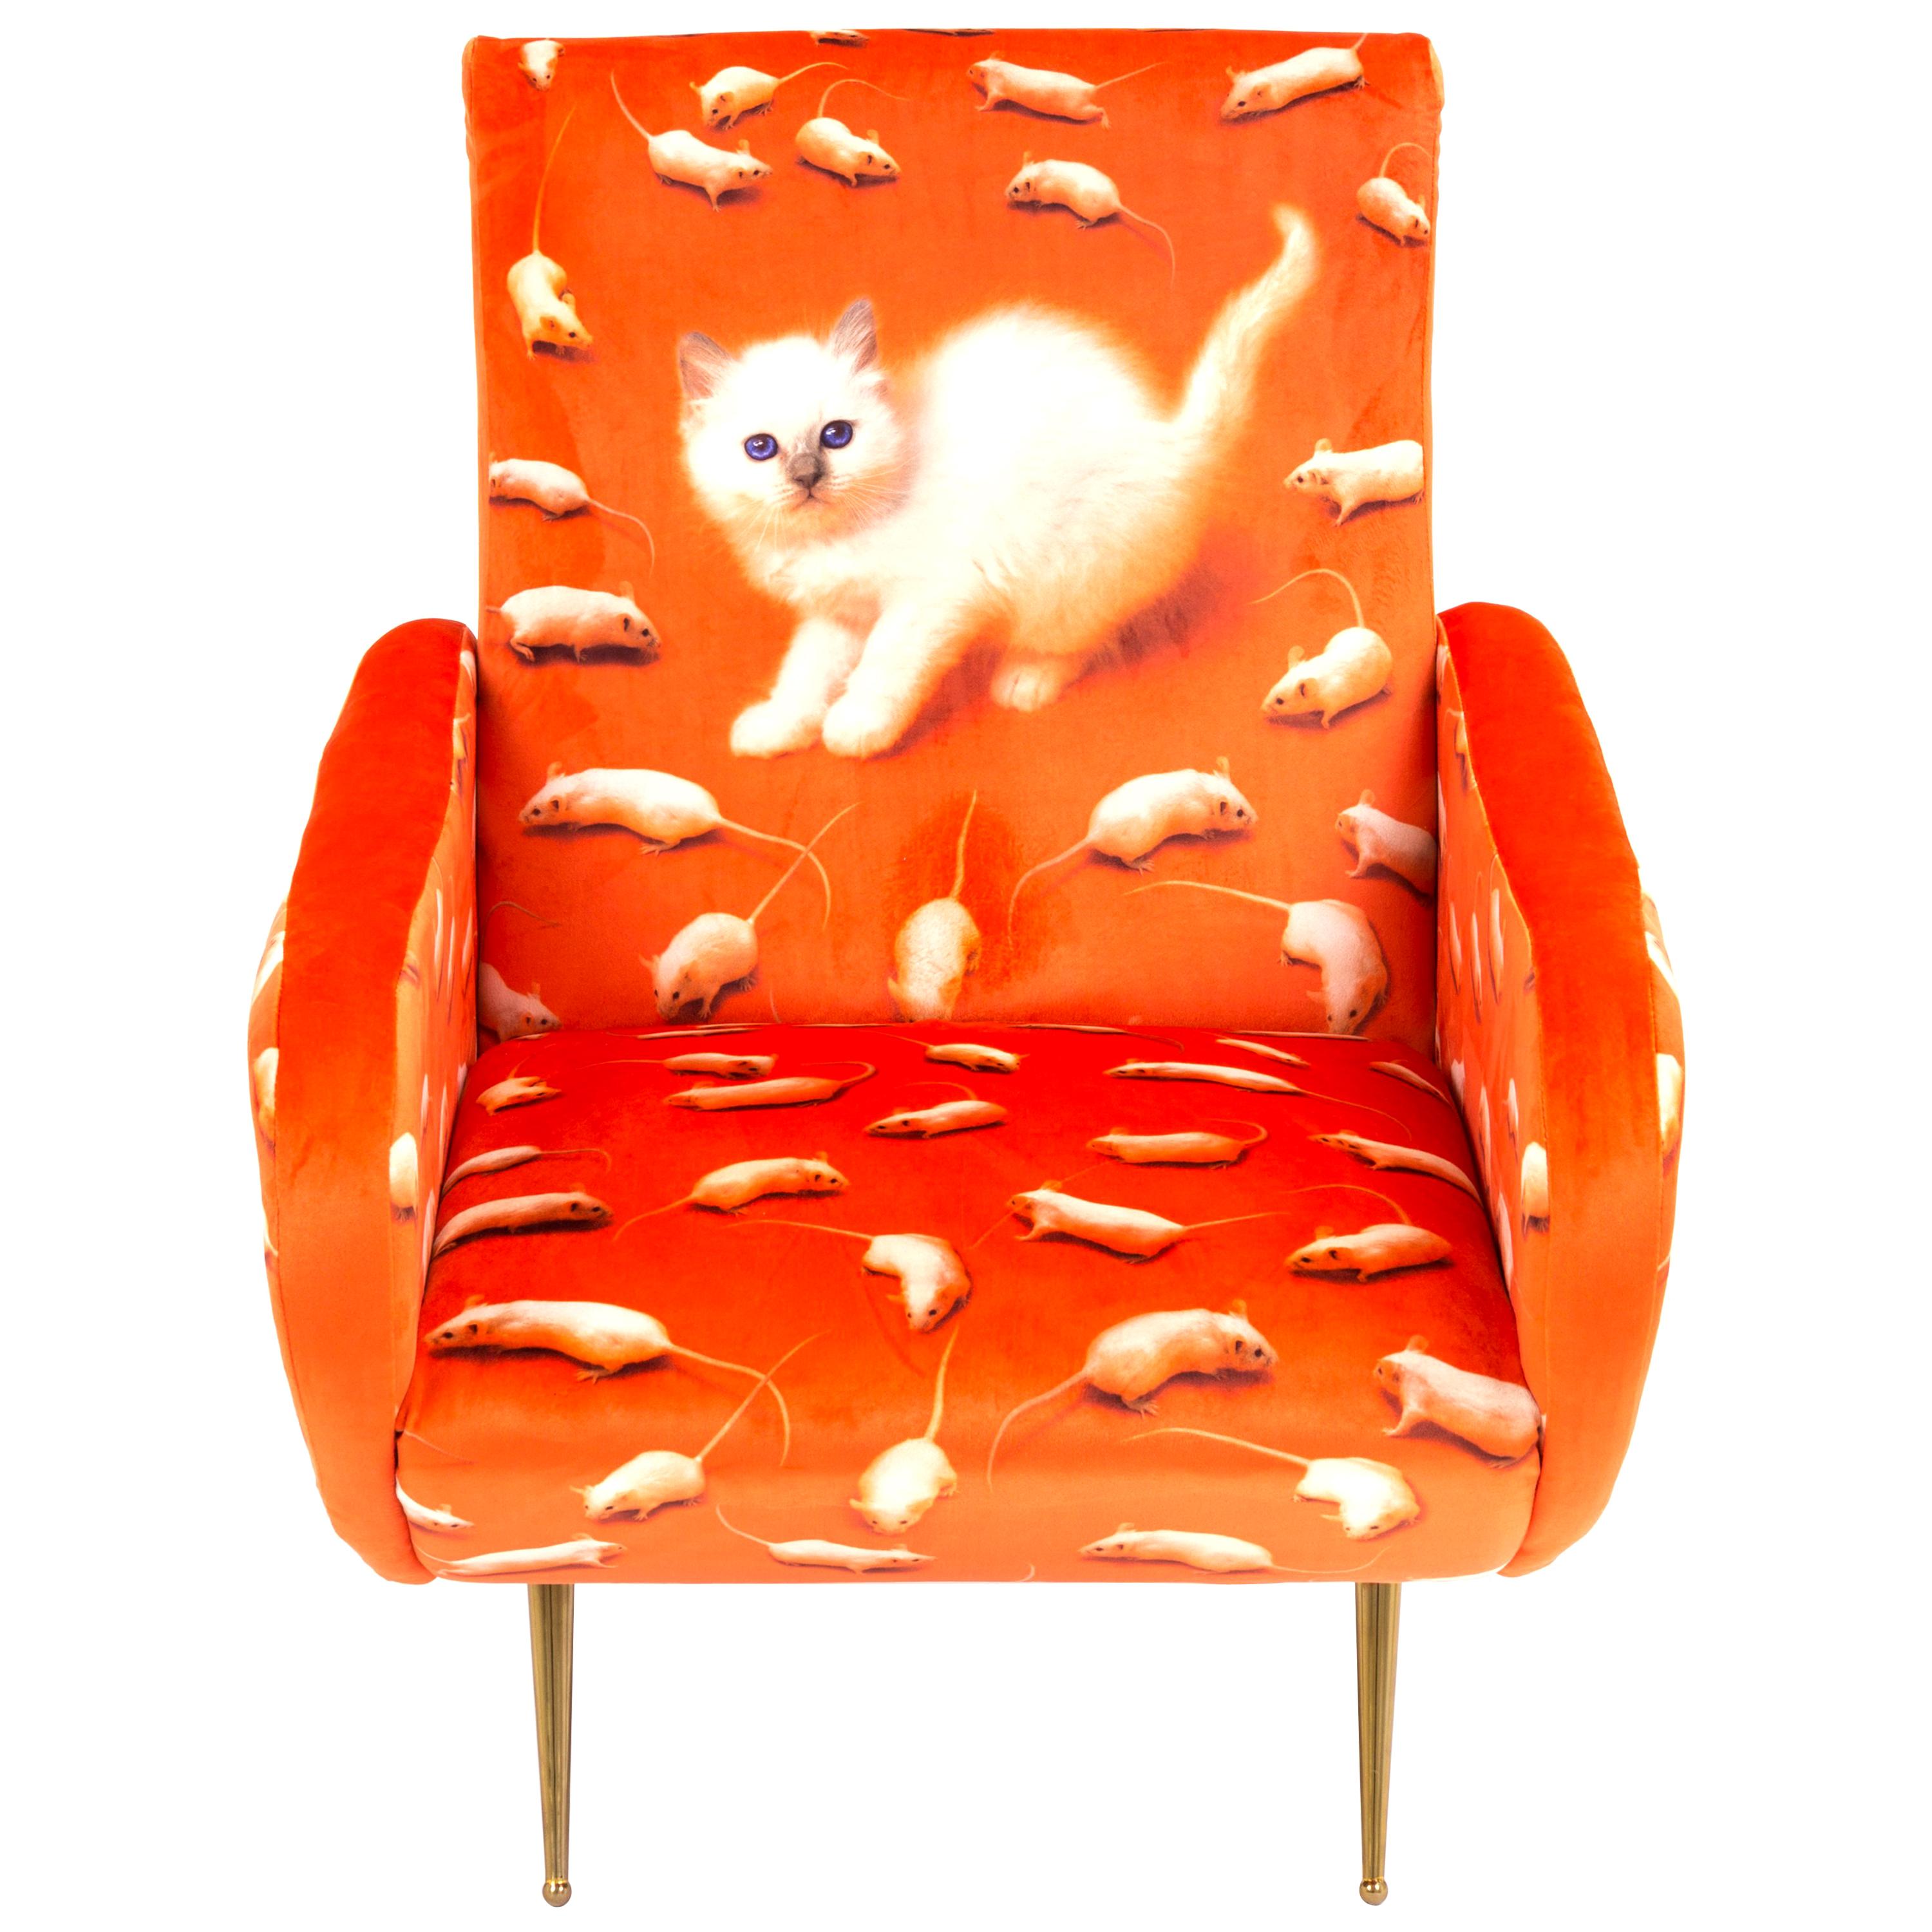 Seletti "Kitten" Upholstered Armchair by Toiletpaper Magazine